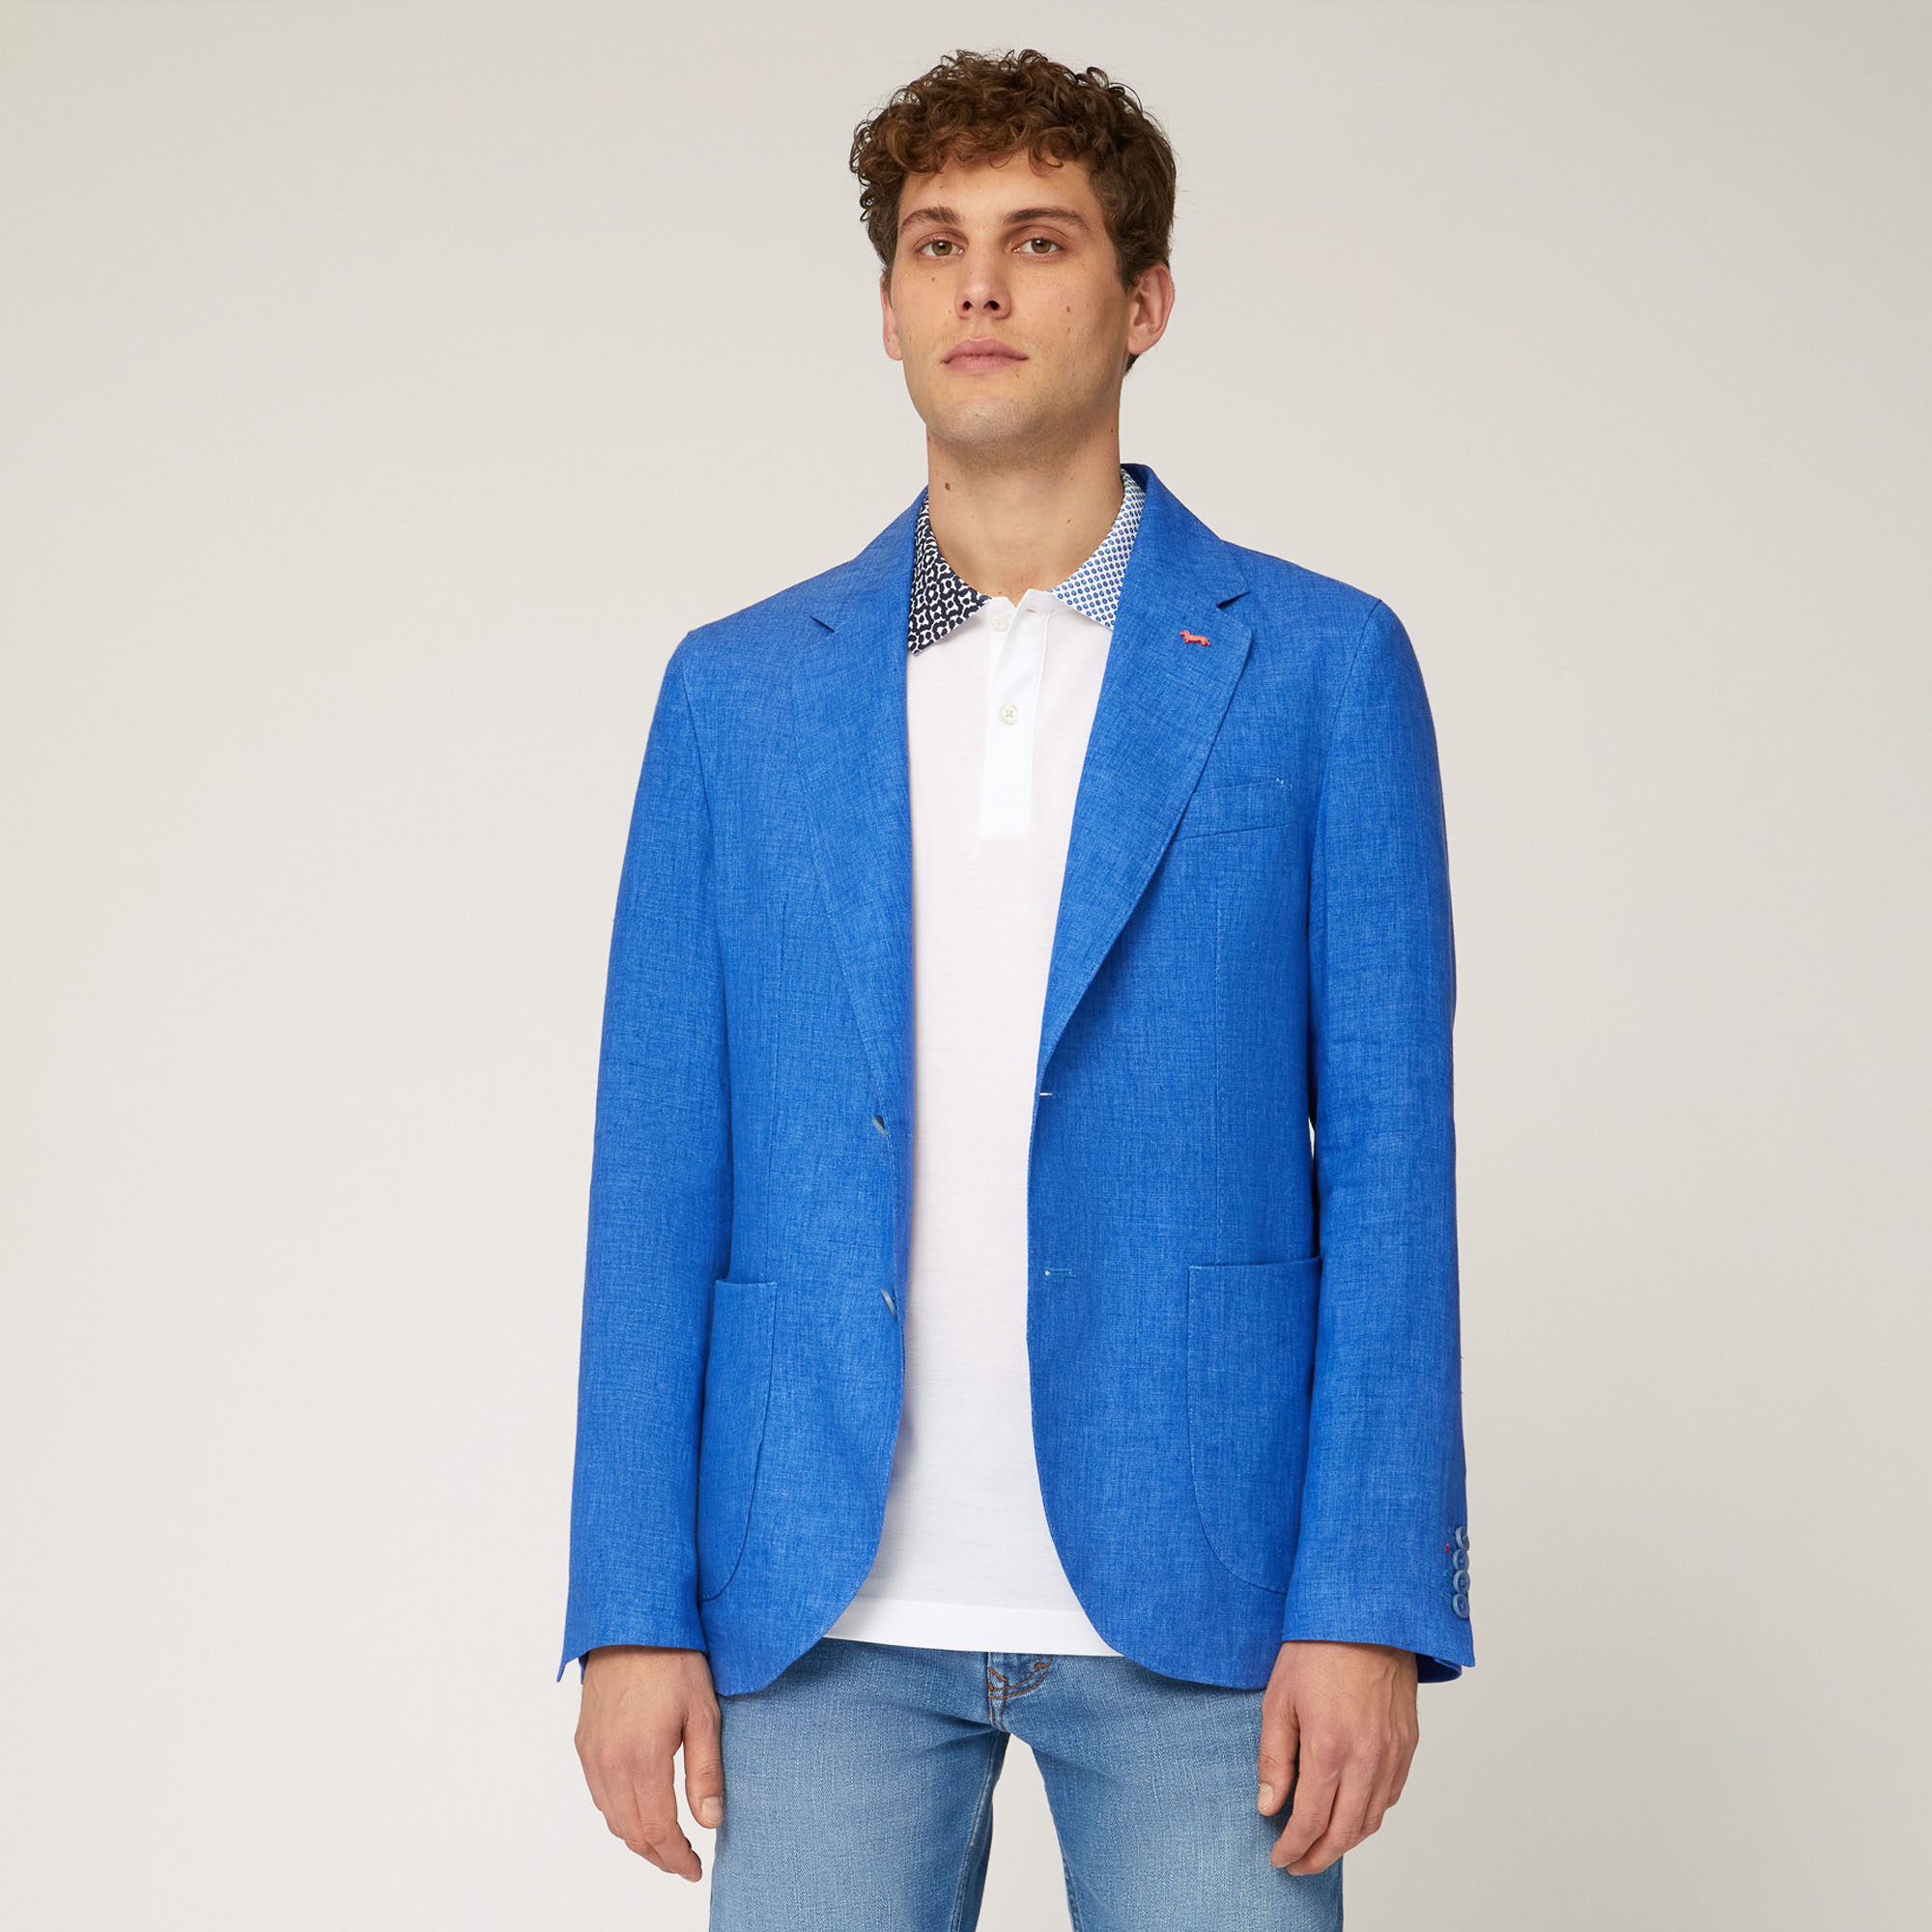 Linen Jacket with Pockets, Cobalt blue, large